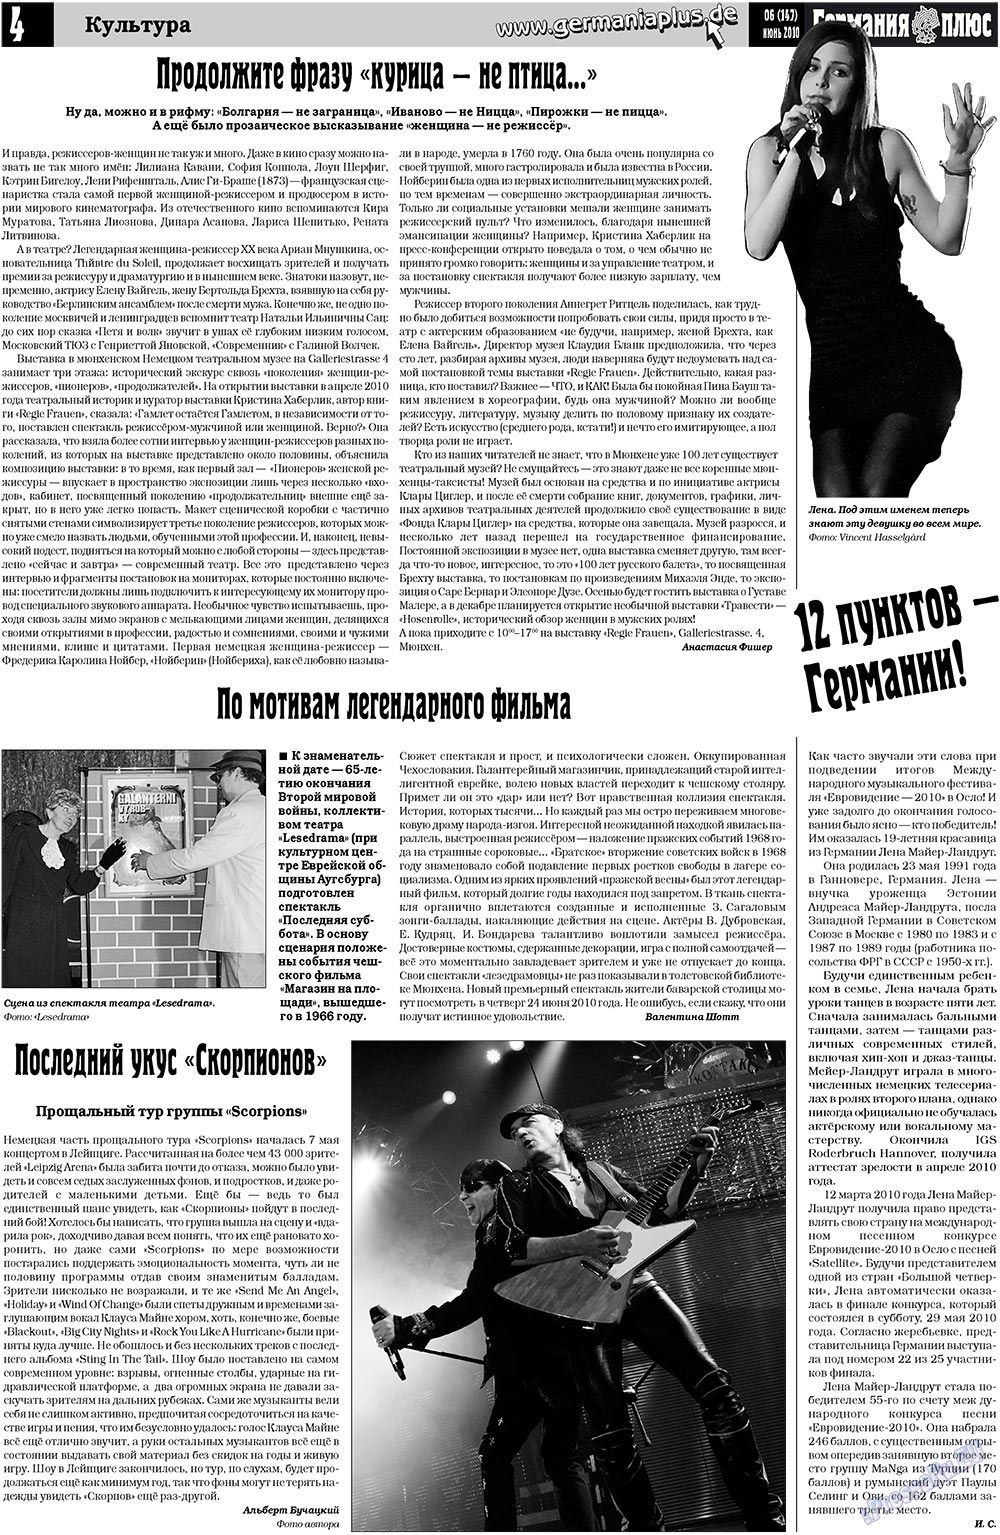 Германия плюс, газета. 2010 №6 стр.4